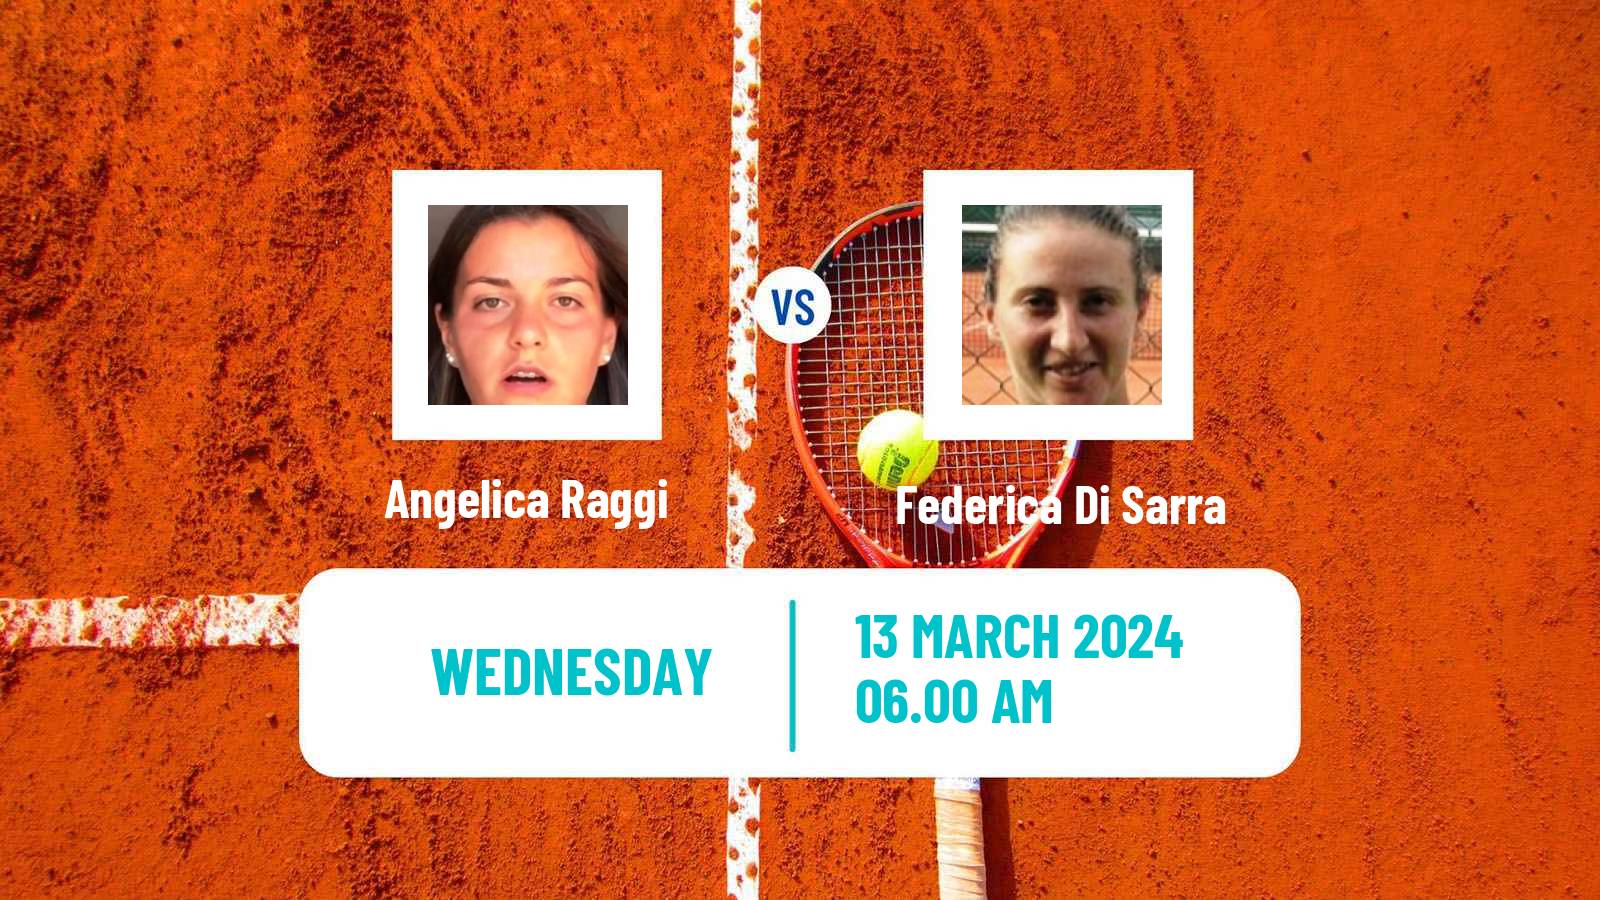 Tennis ITF W35 Solarino 2 Women Angelica Raggi - Federica Di Sarra